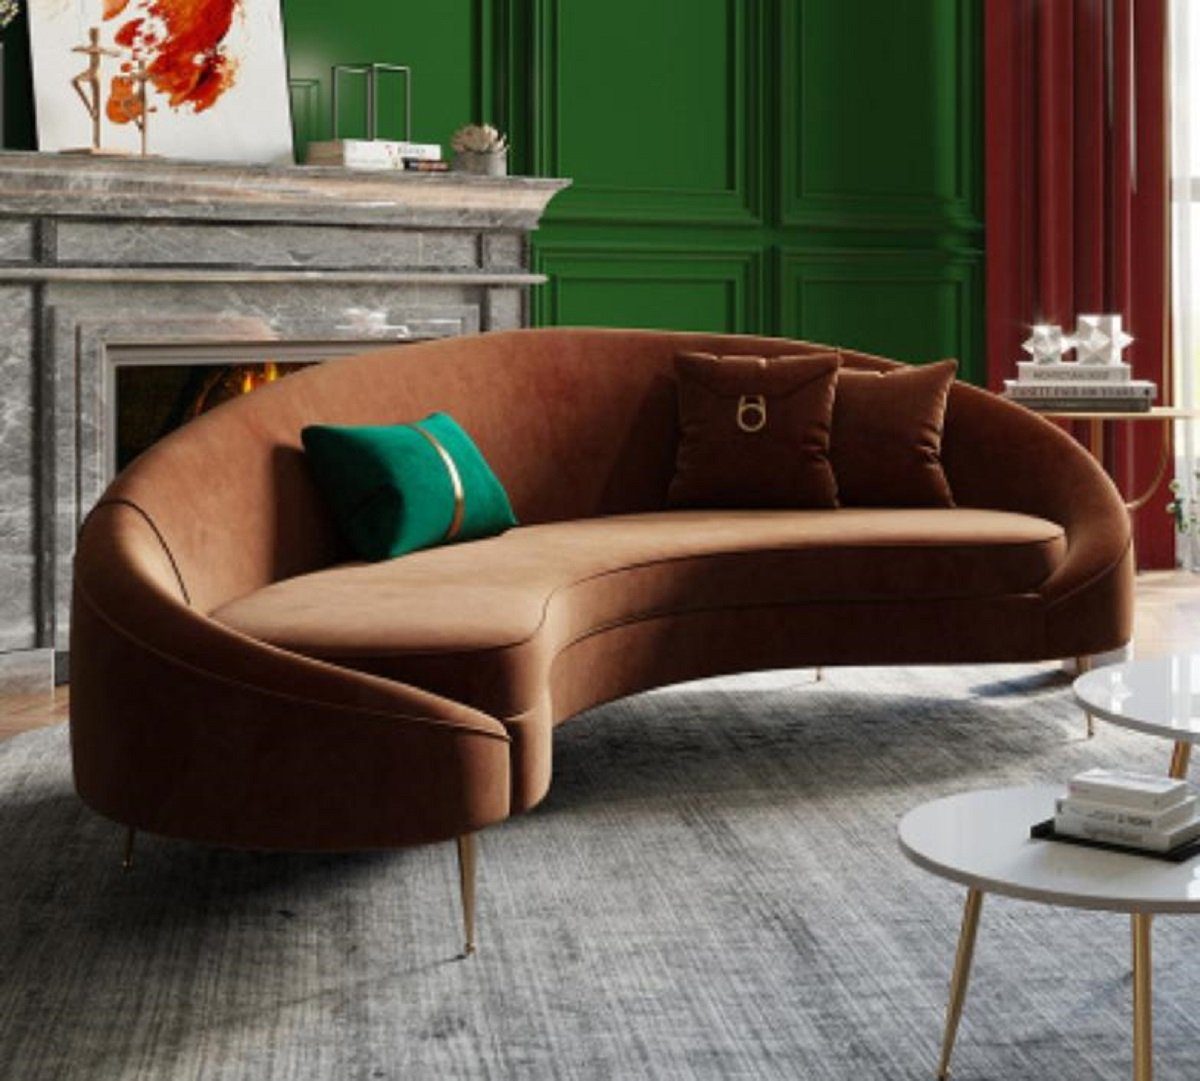 JVmoebel Sofa, Halbrundes Sofa luxus Möbel